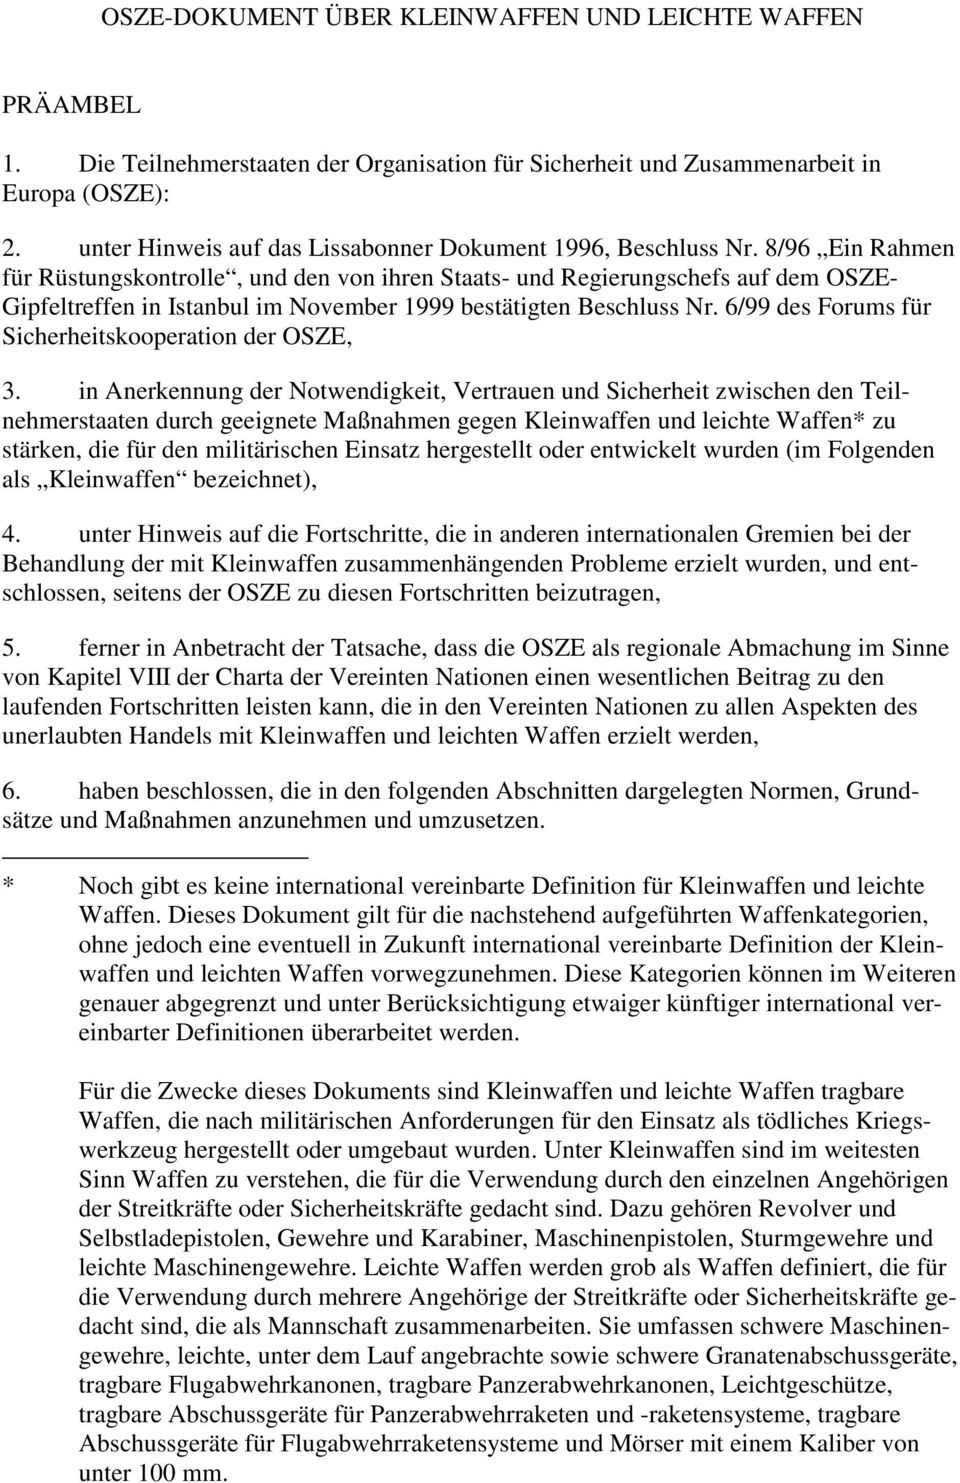 8/96 Ein Rahmen für Rüstungskontrolle, und den von ihren Staats- und Regierungschefs auf dem OSZE- Gipfeltreffen in Istanbul im November 1999 bestätigten Beschluss Nr.